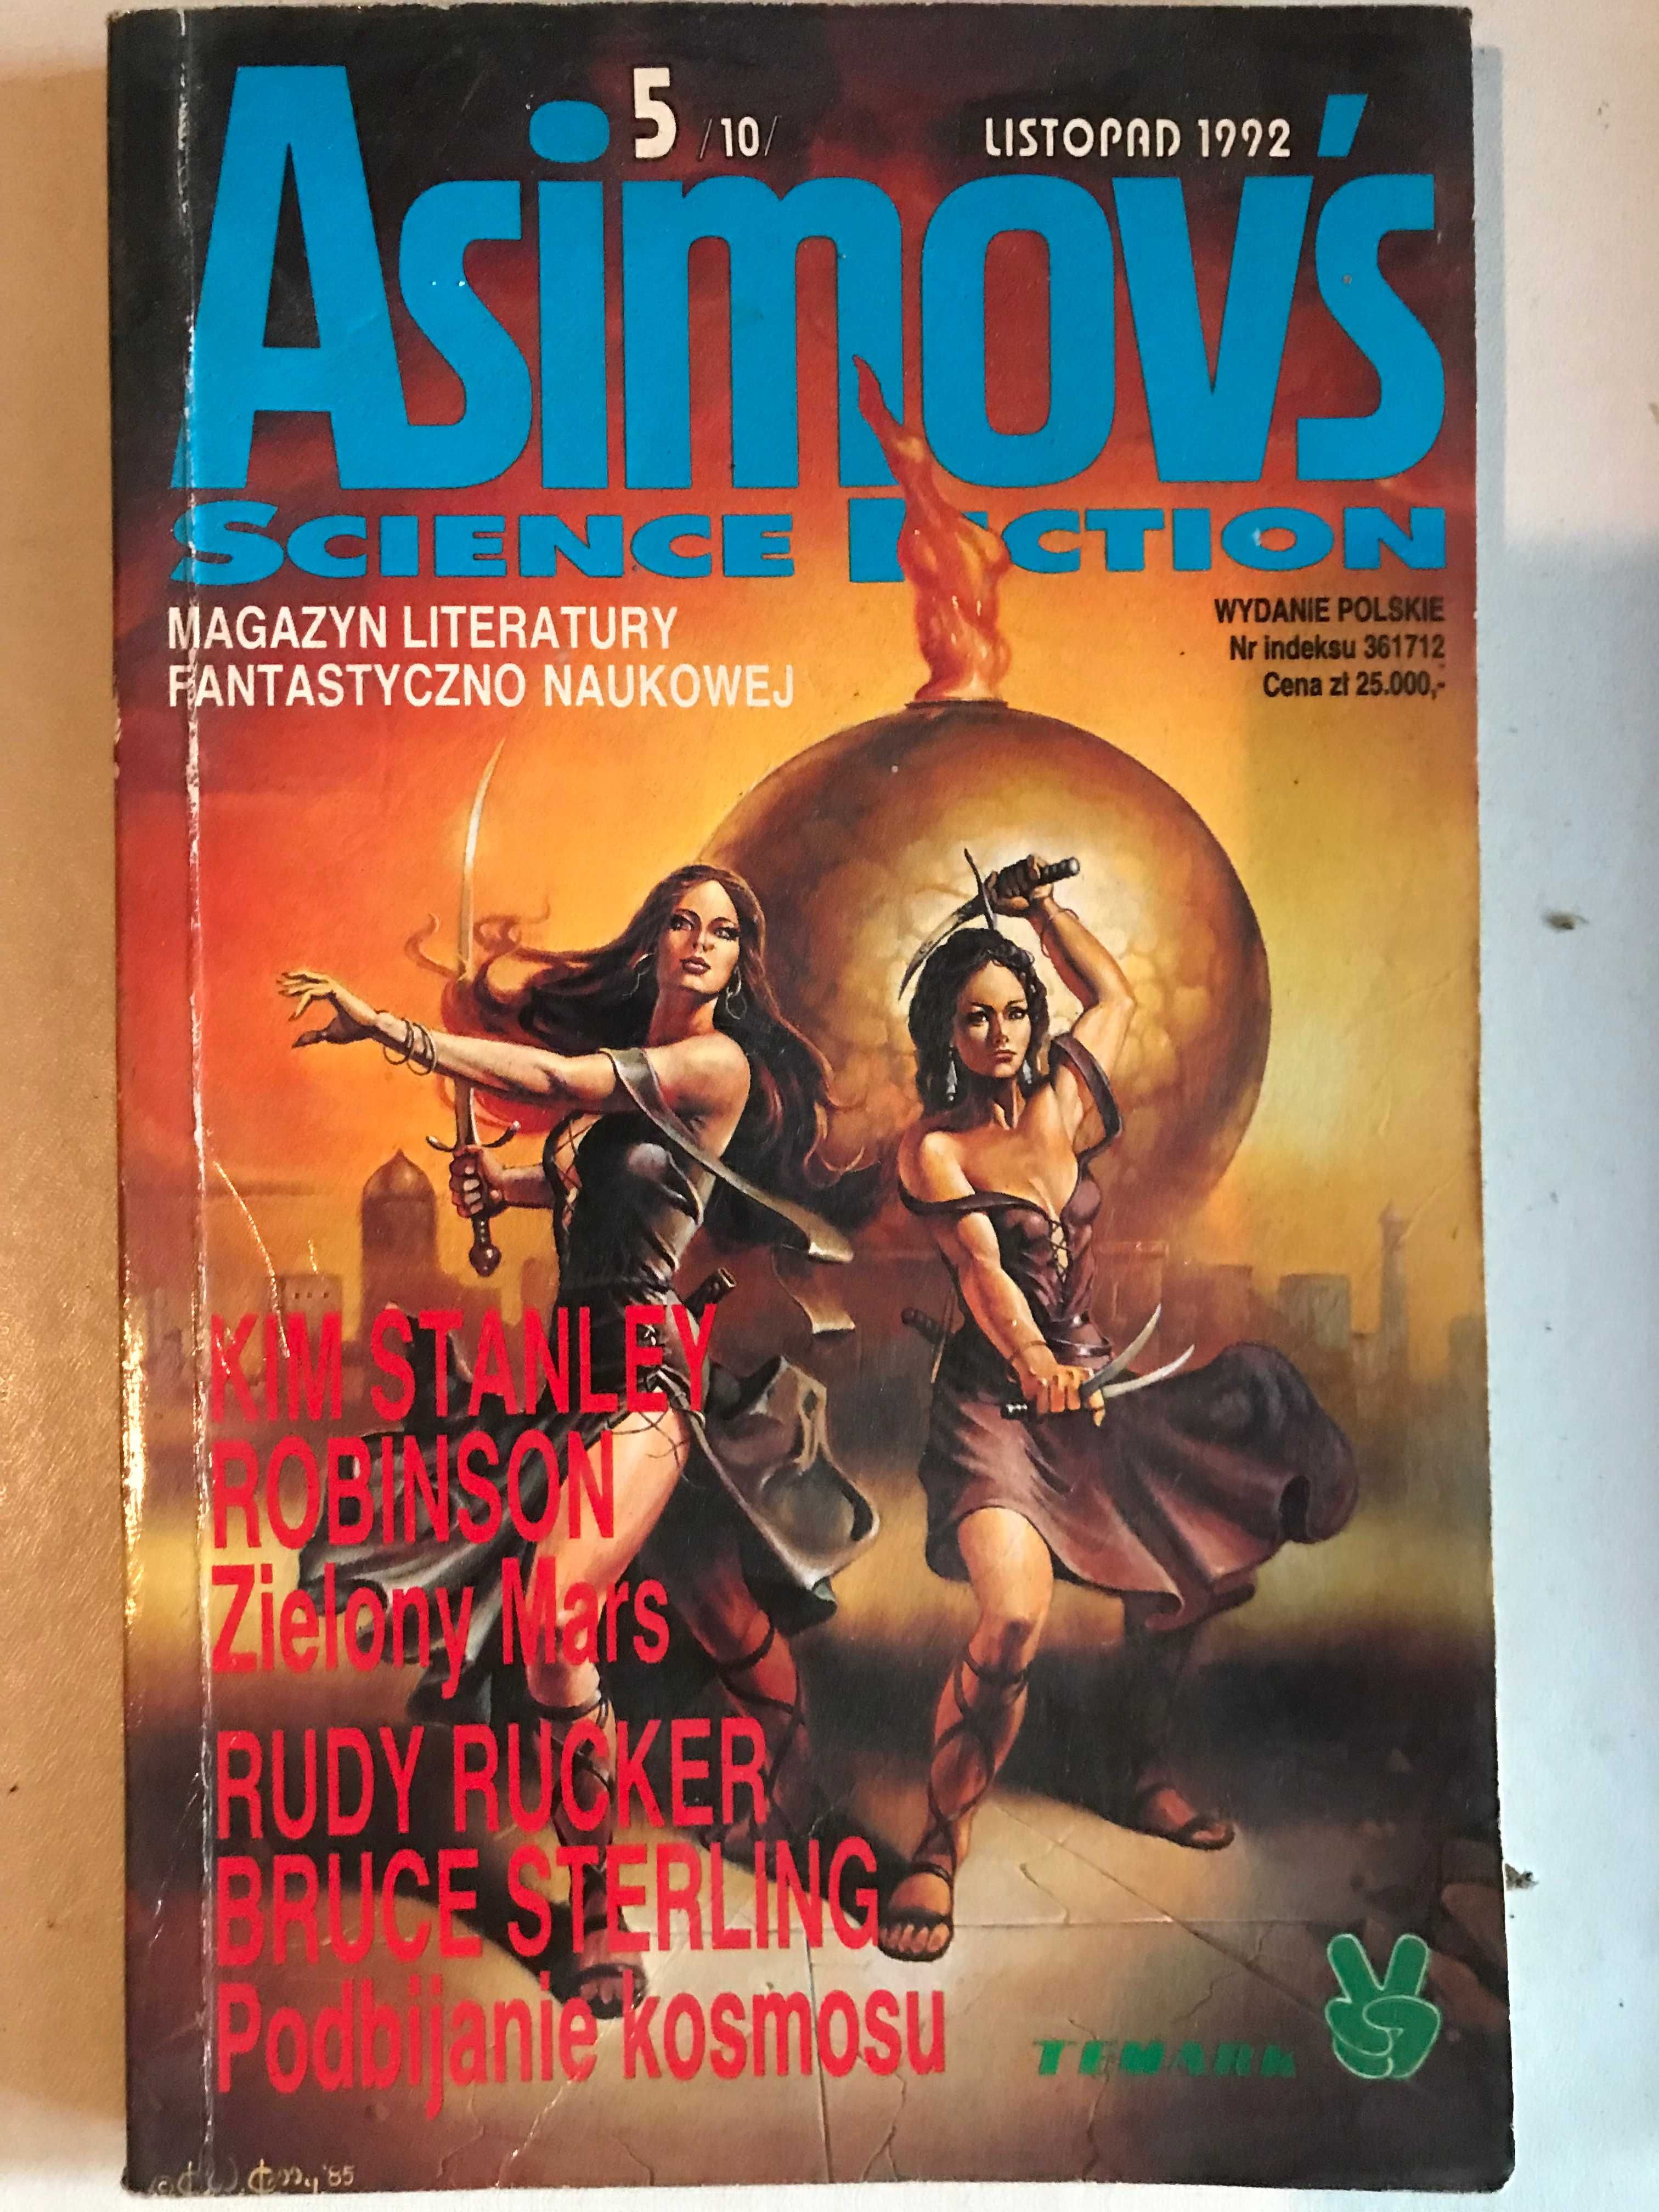 Czasopismo Isaak Asimov's science fiction wydanie polskie listop. 1992